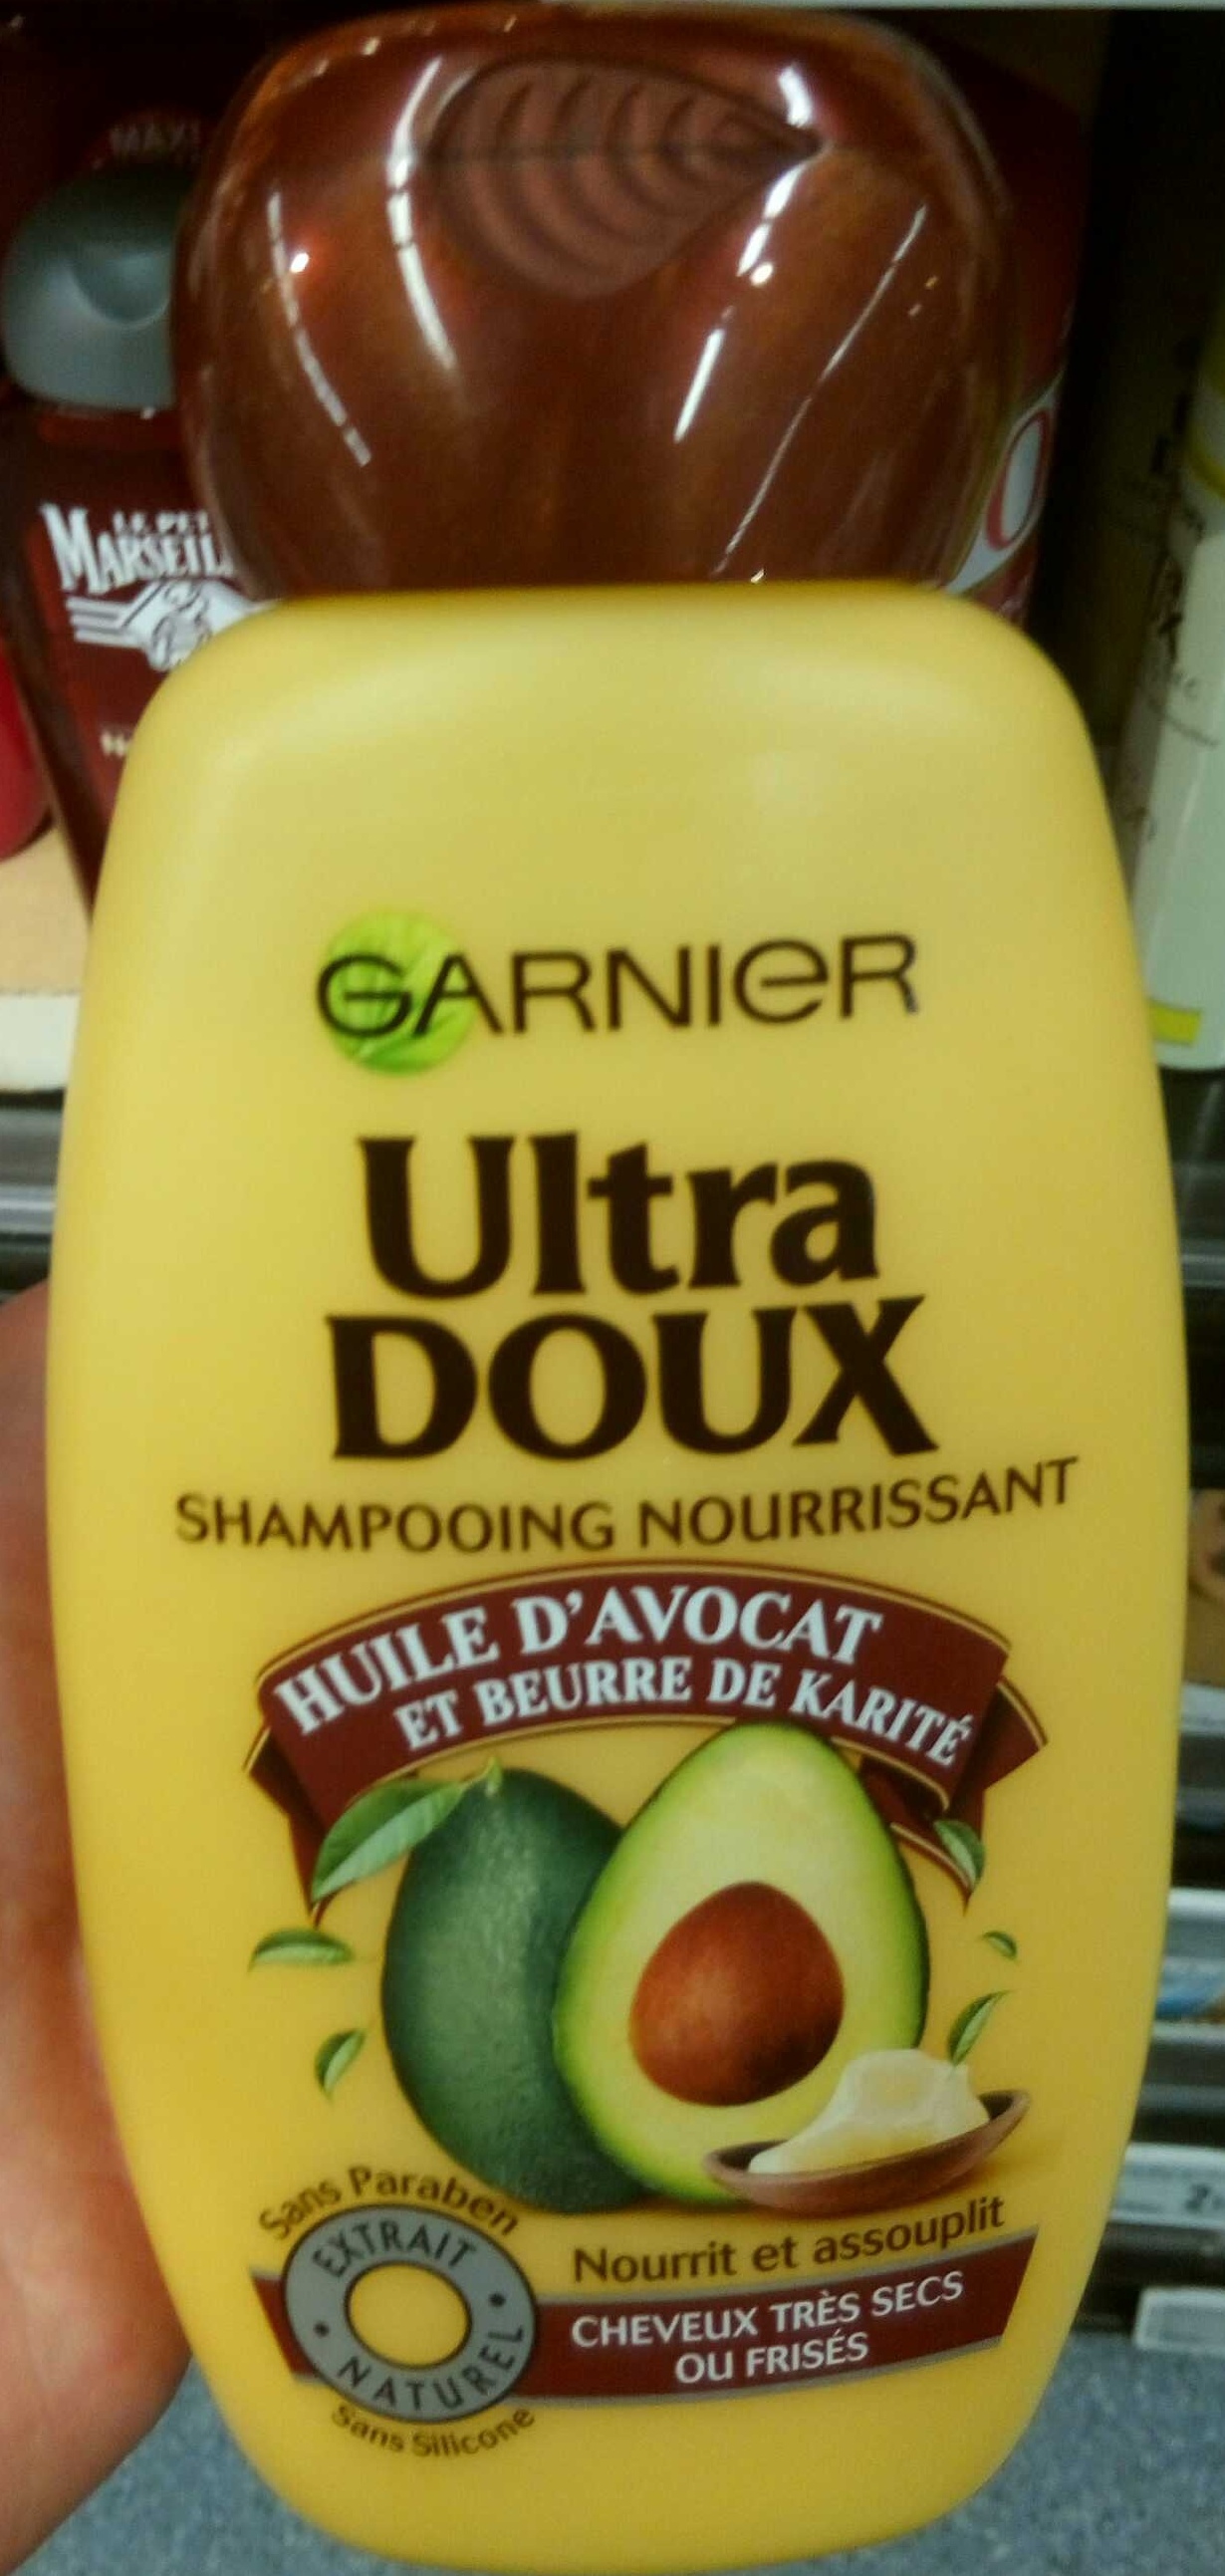 Ultra Doux Shampooing Nourrissant Huile d'Avocat et Beurre de Karité - Product - fr